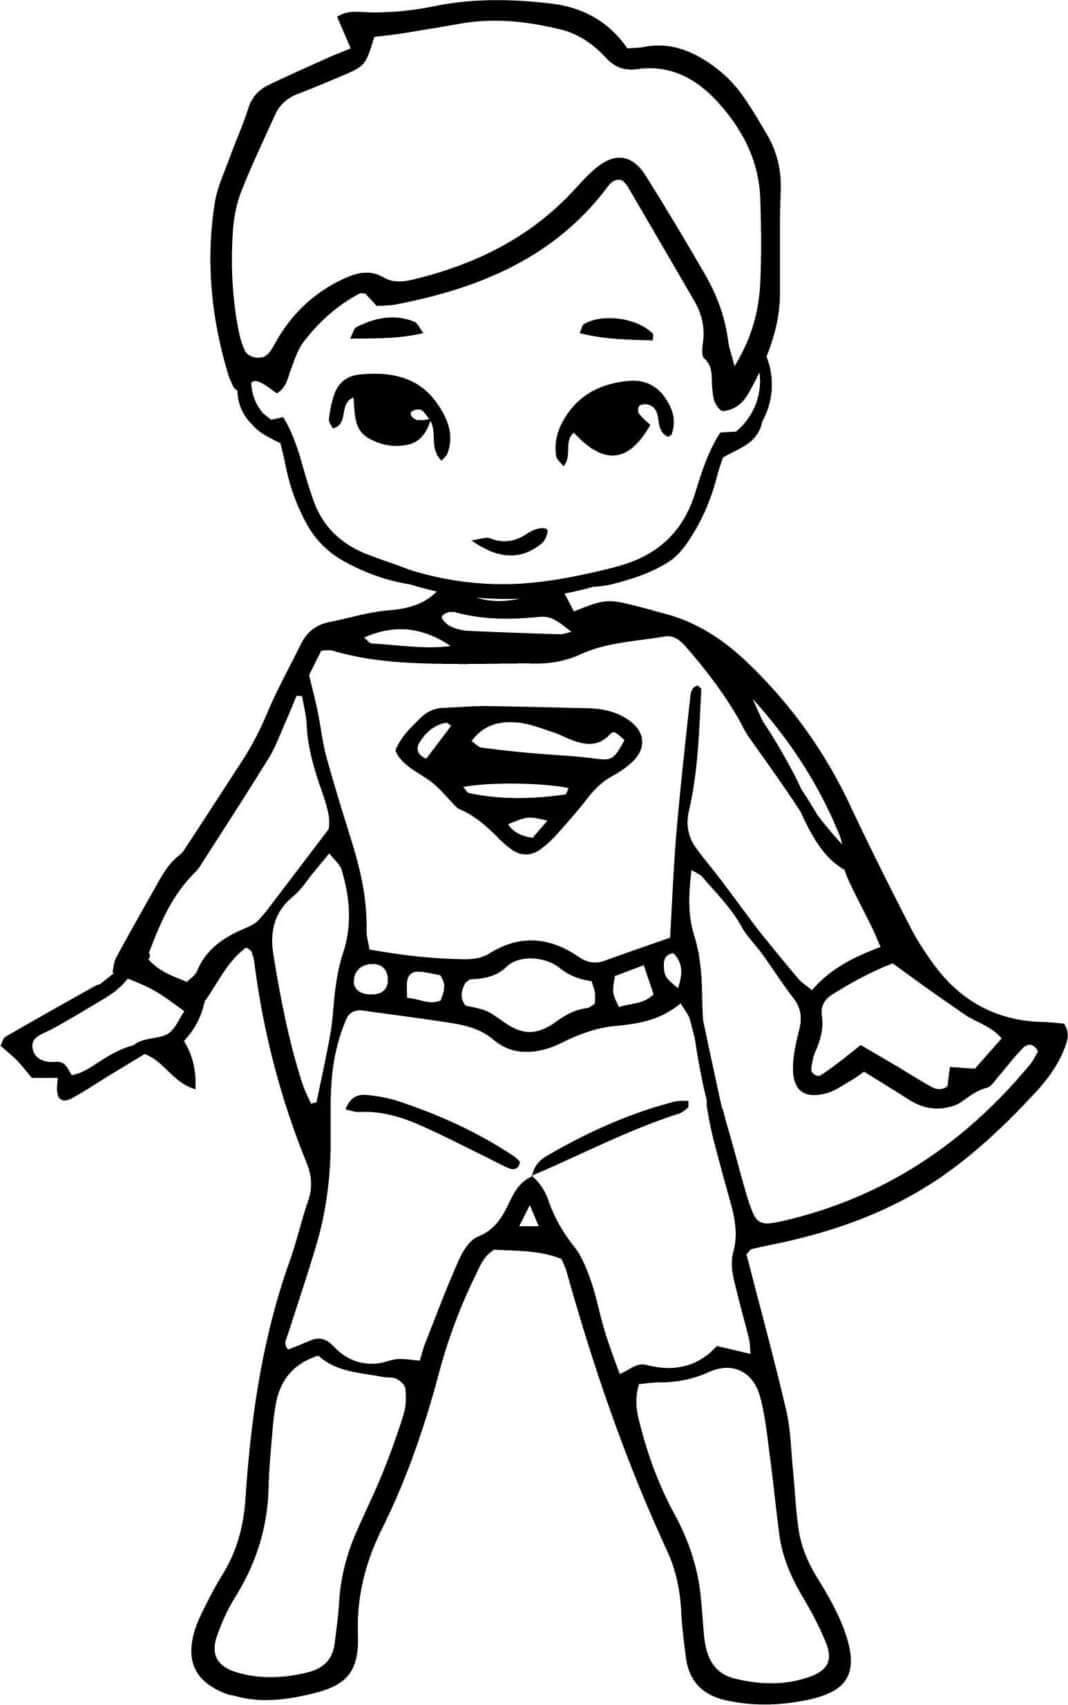 Desenhando o Pequeno Super-homem para colorir